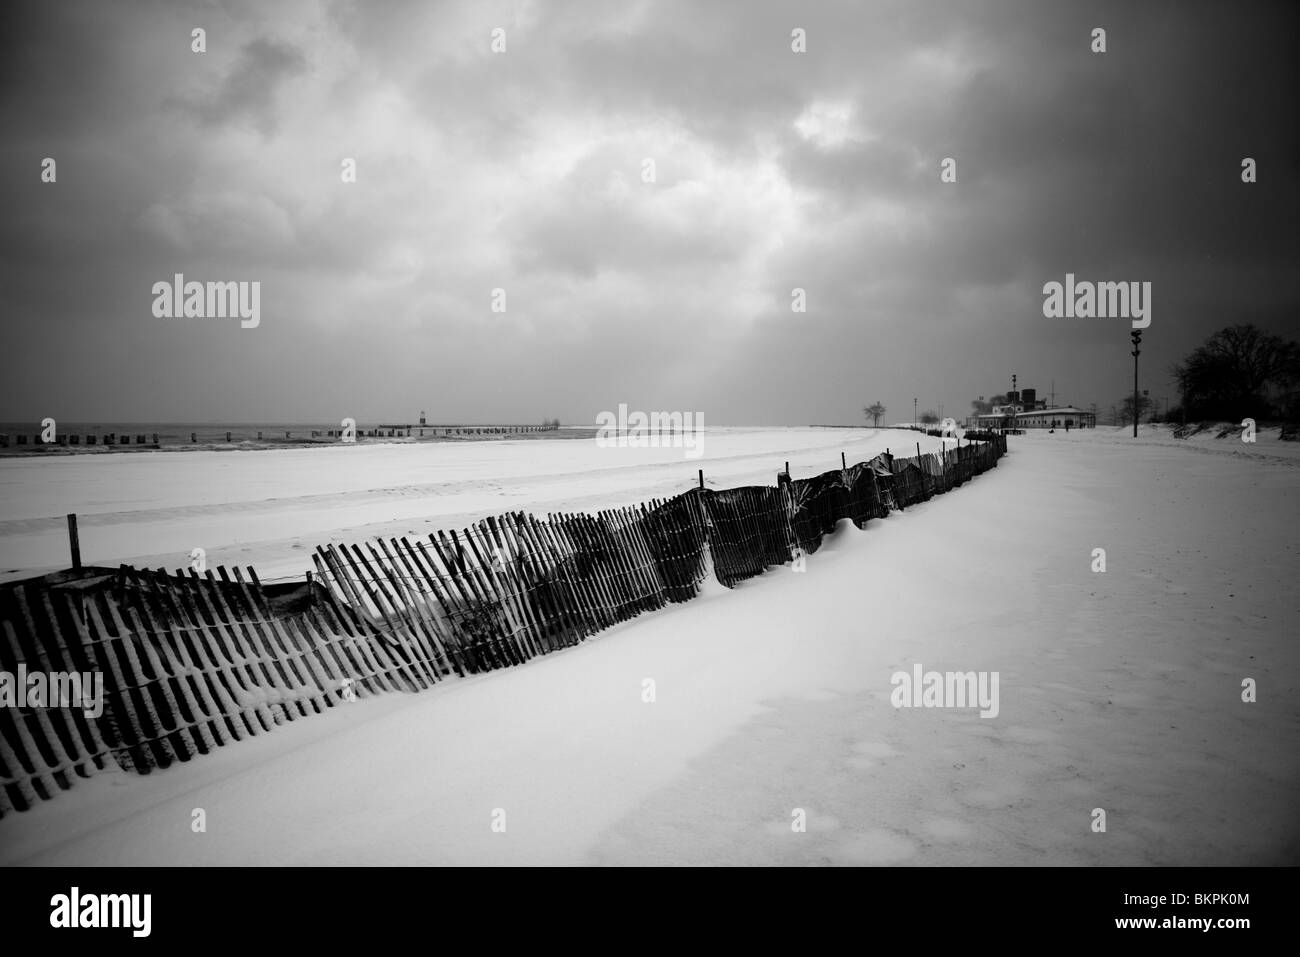 270-6498-20 NORTH AVENUE BEACH IN WINTER, CHICAGO, ILLINOIS Stock Photo